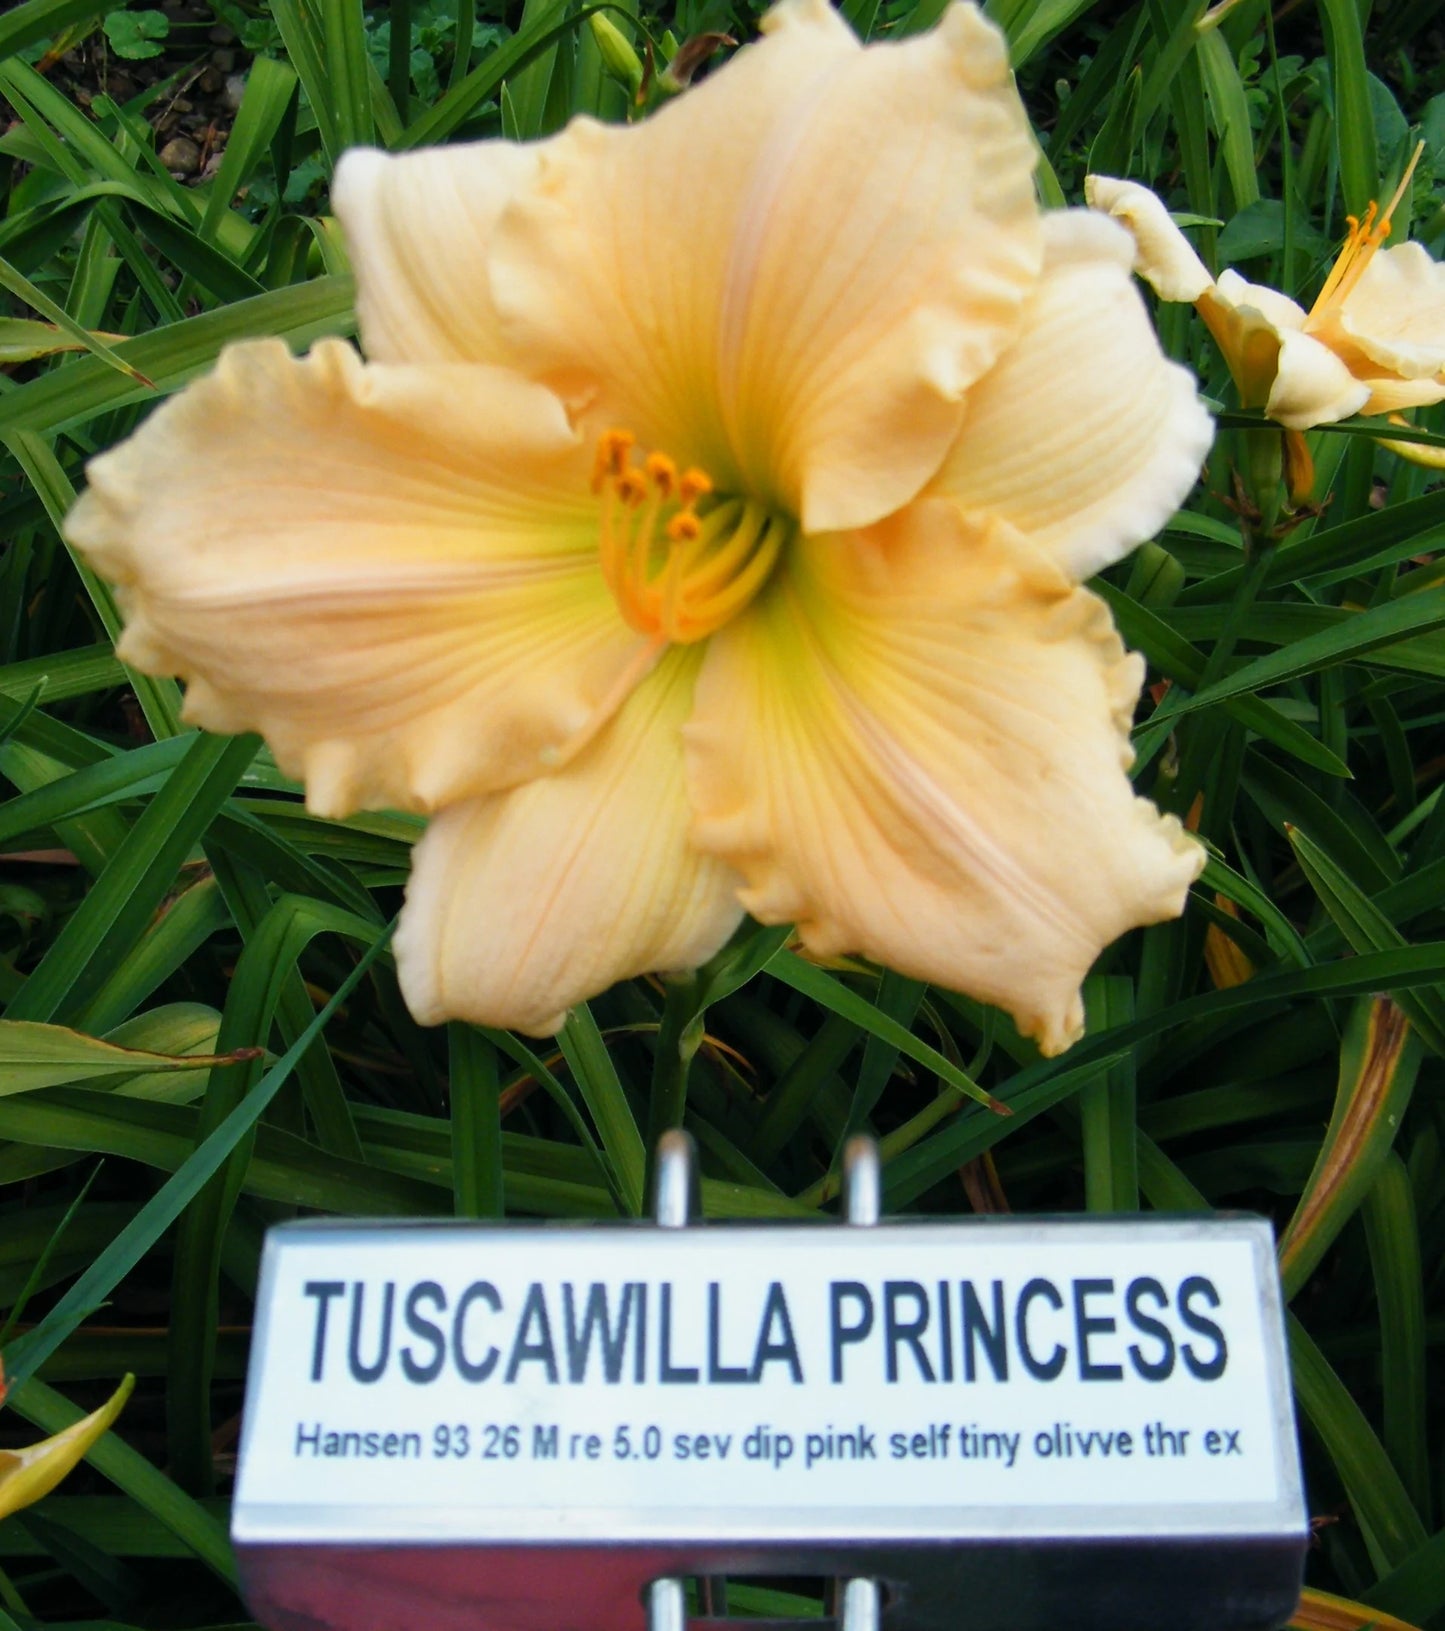 TUSCAWILLA PRINCESS